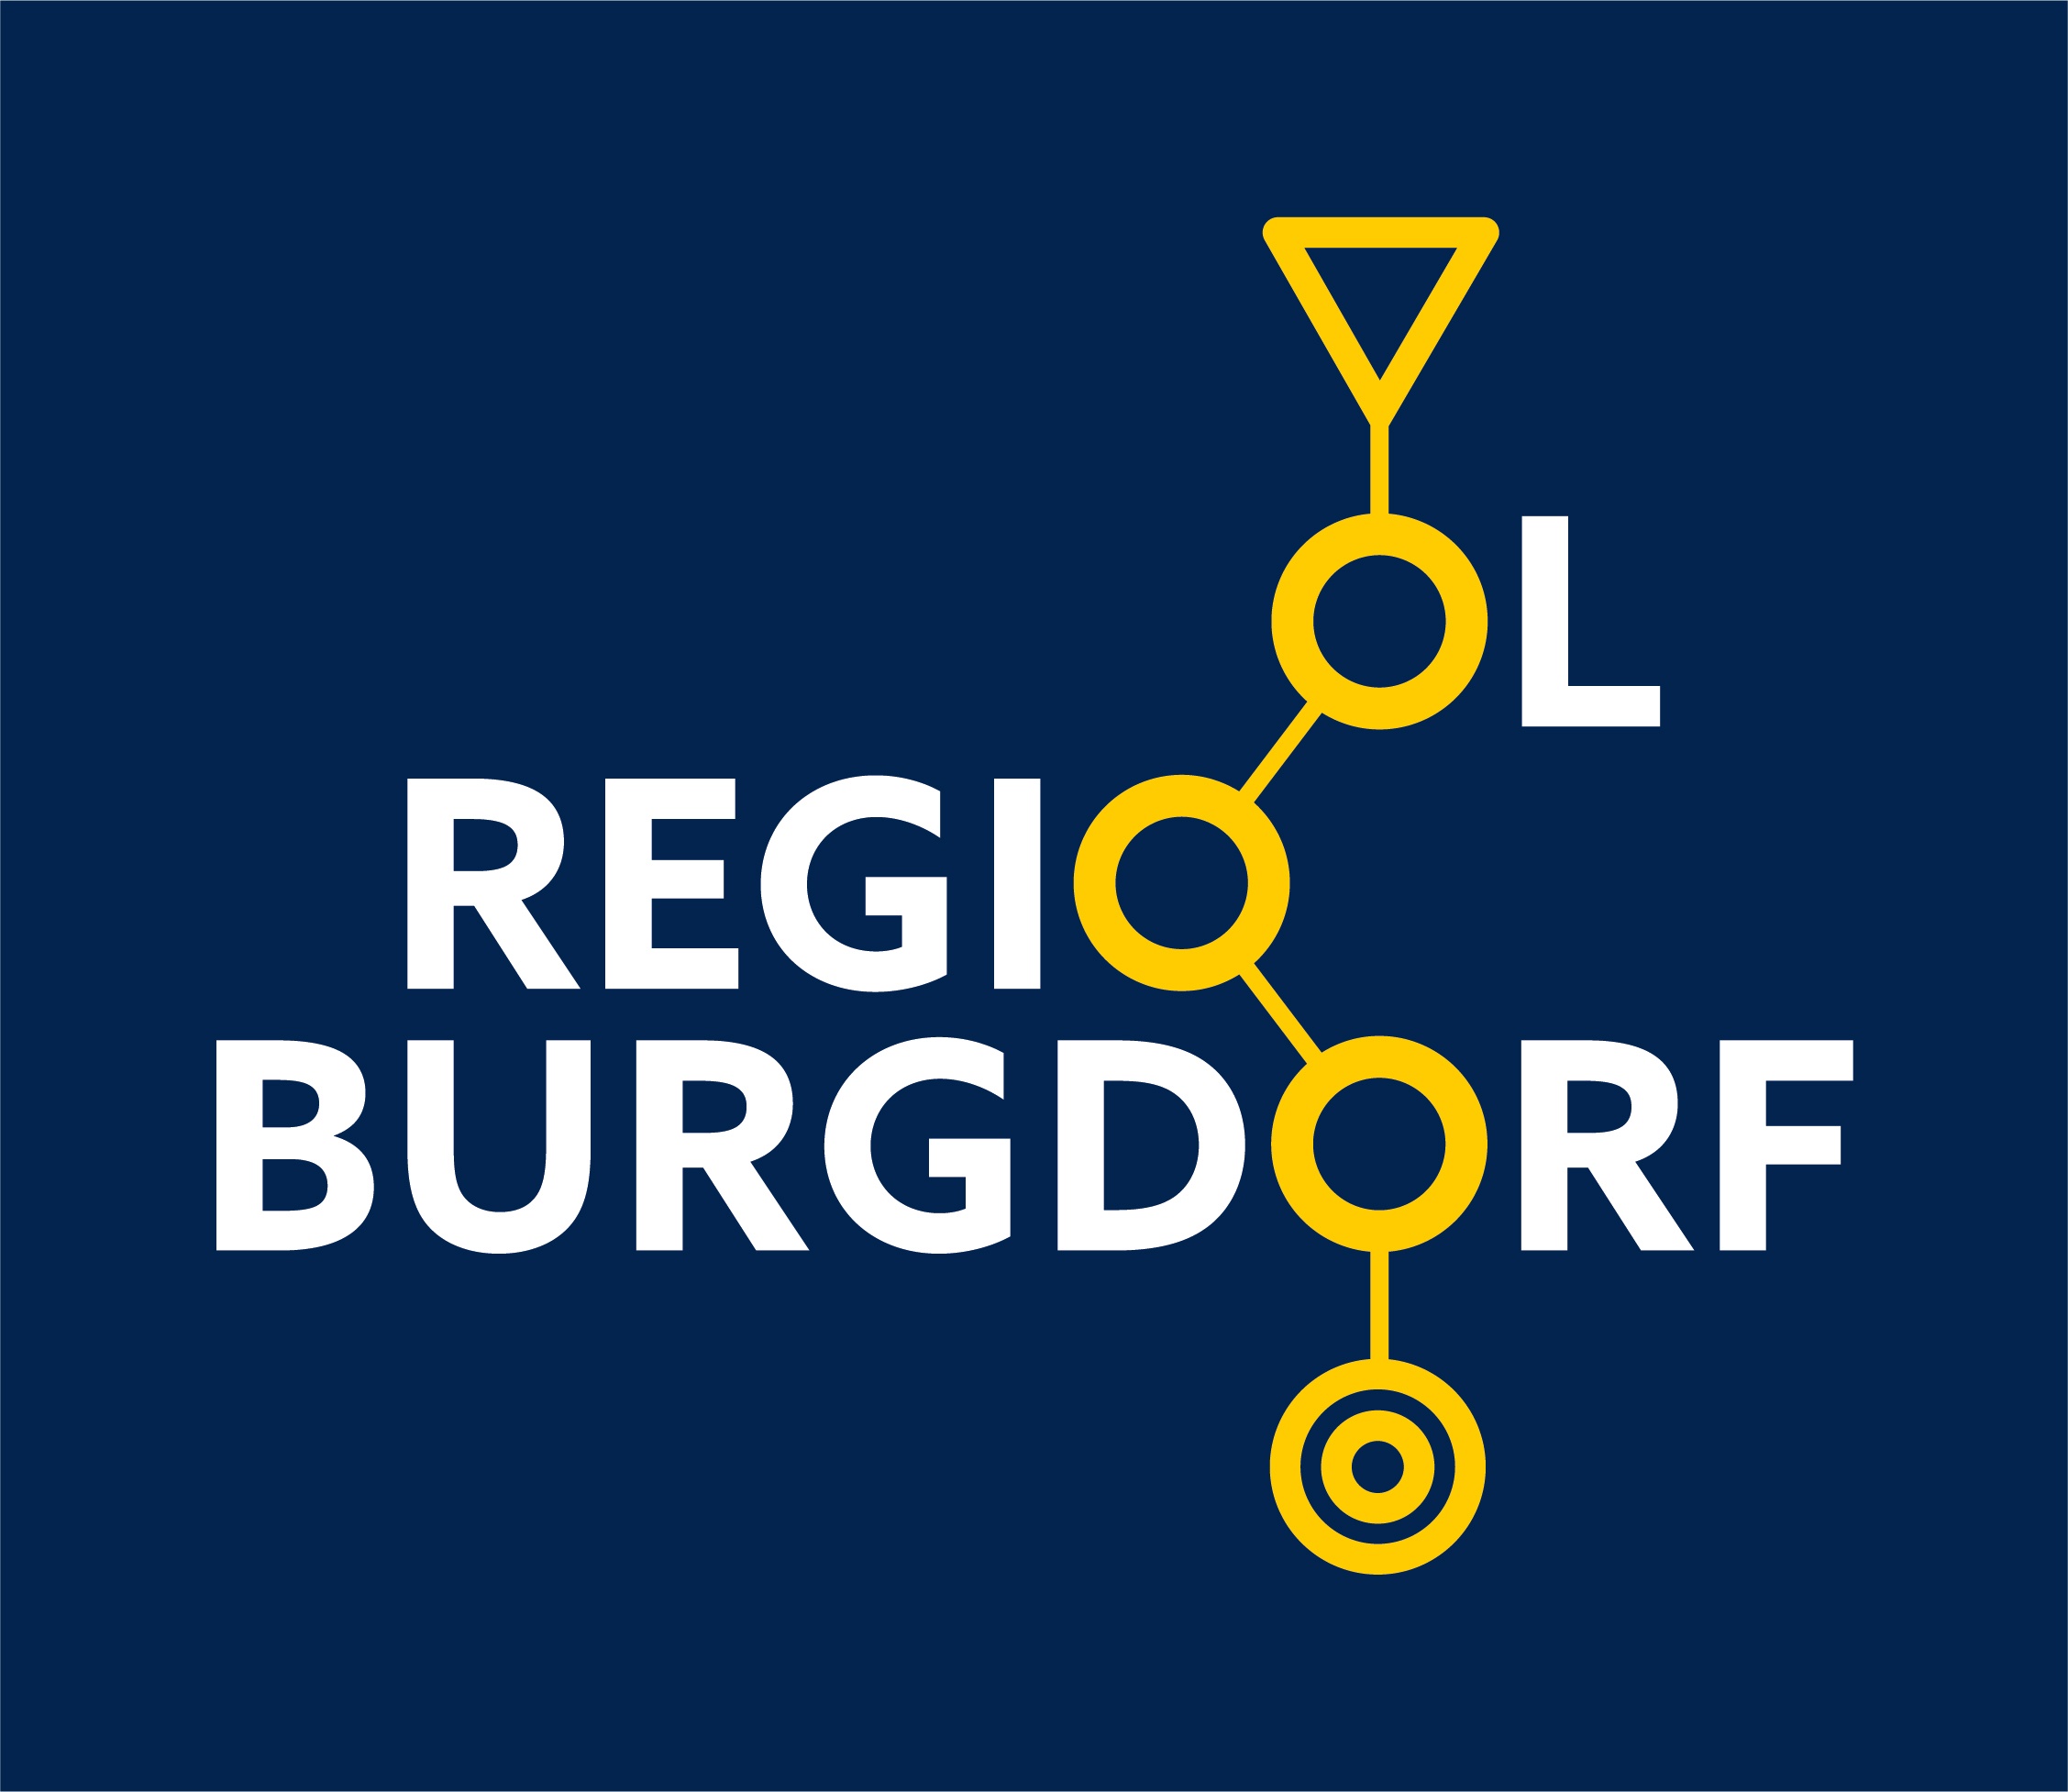 Die OLV Hindelbank wird zur OL Regio Burgdorf